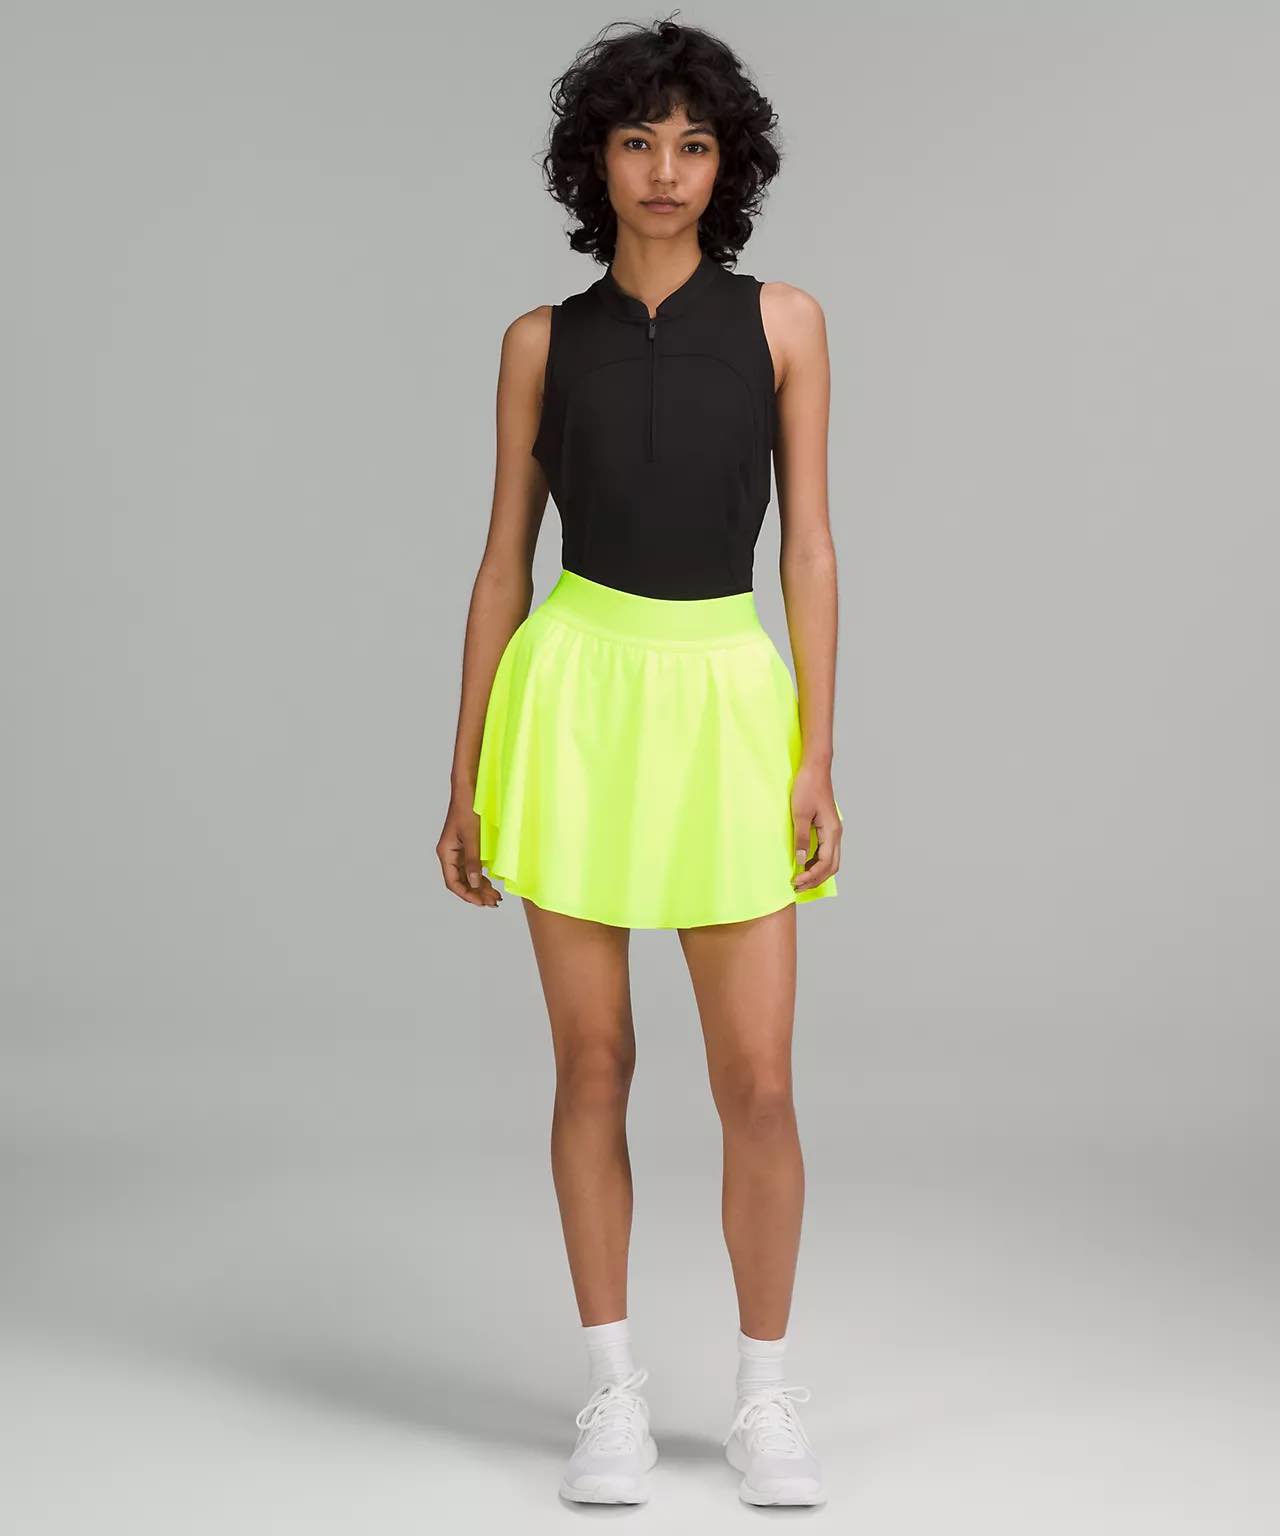 lululemon skirt - long skirt - Court Rival High-Rise Skirt Long - tennis skirt - golf skirt